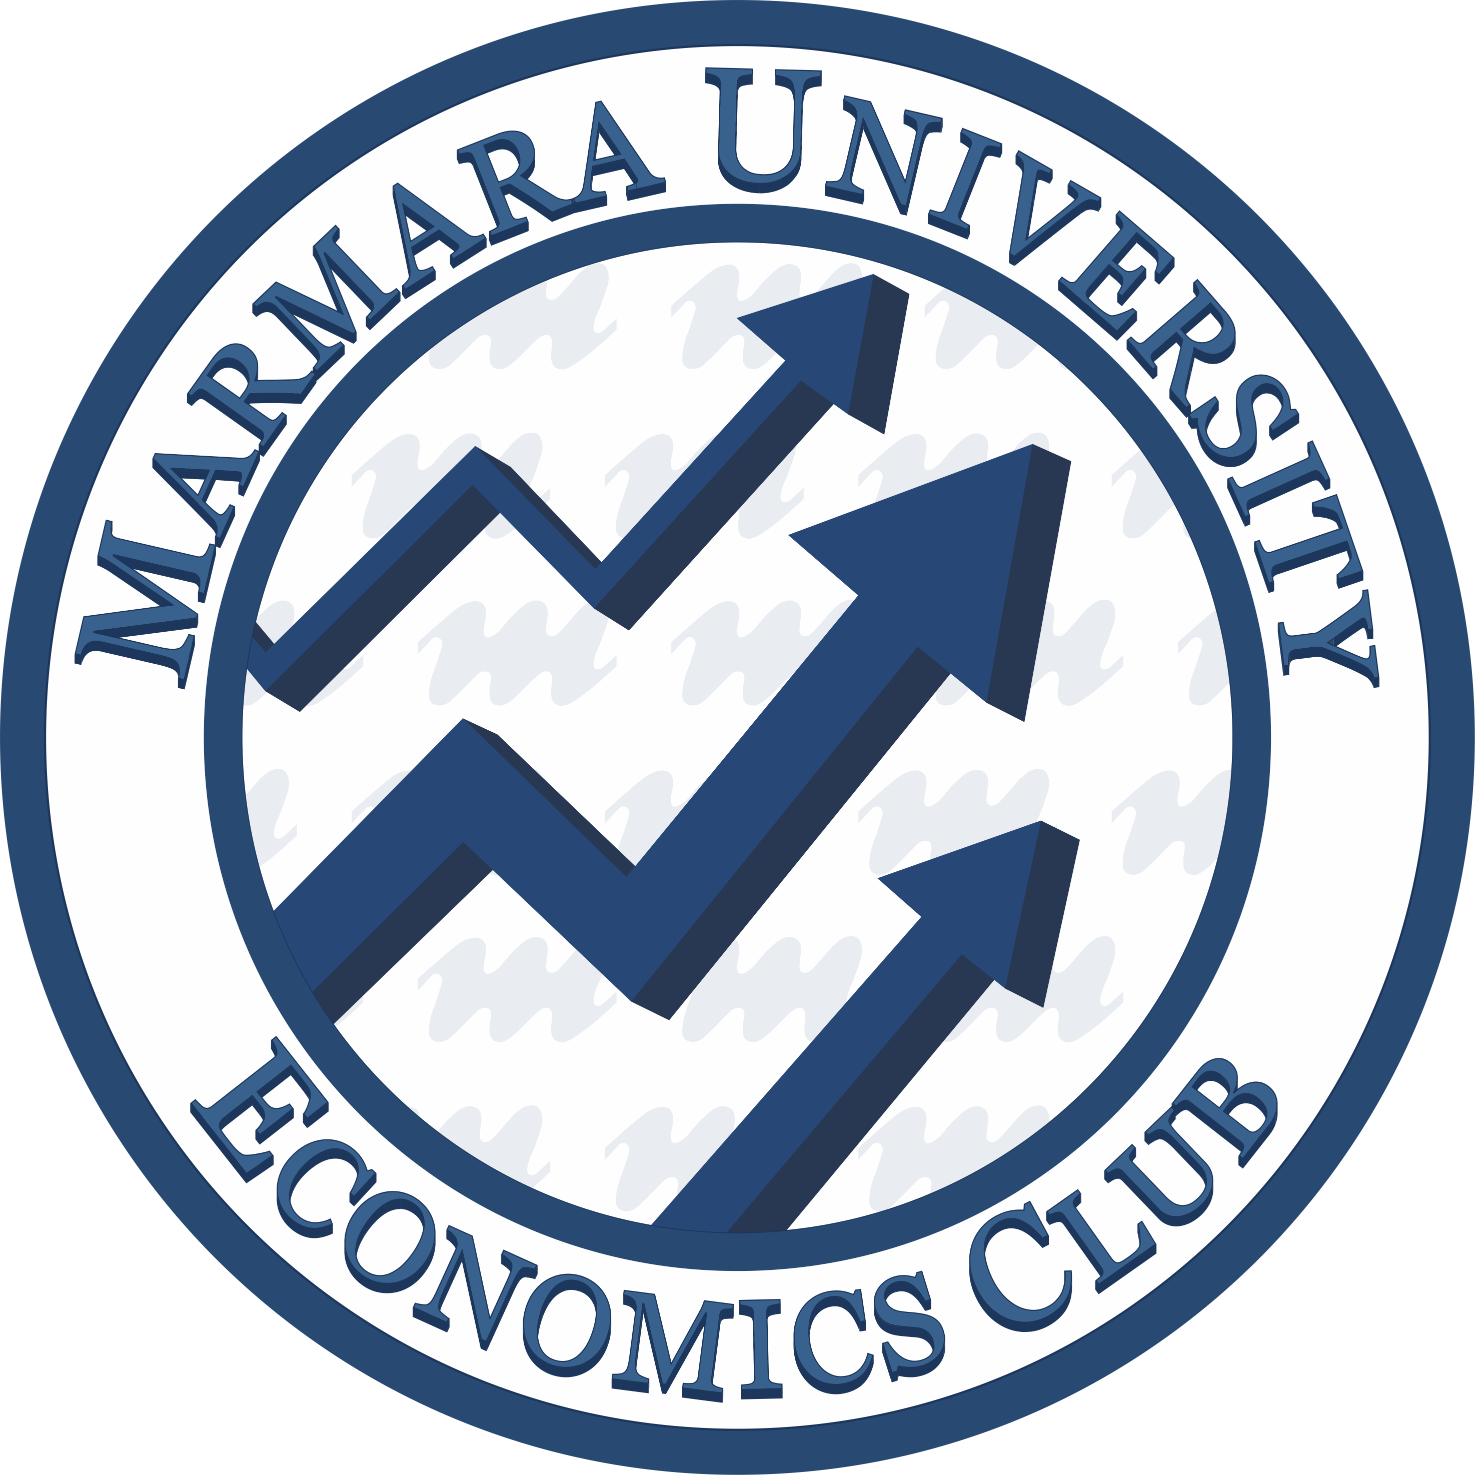 Marmara Economics Club, 2013 yılında kurulmuş inovatif, girişimci ve akademik olguları bir araya getiren ve günden güne büyüyen bir öğrenci topluluğudur.